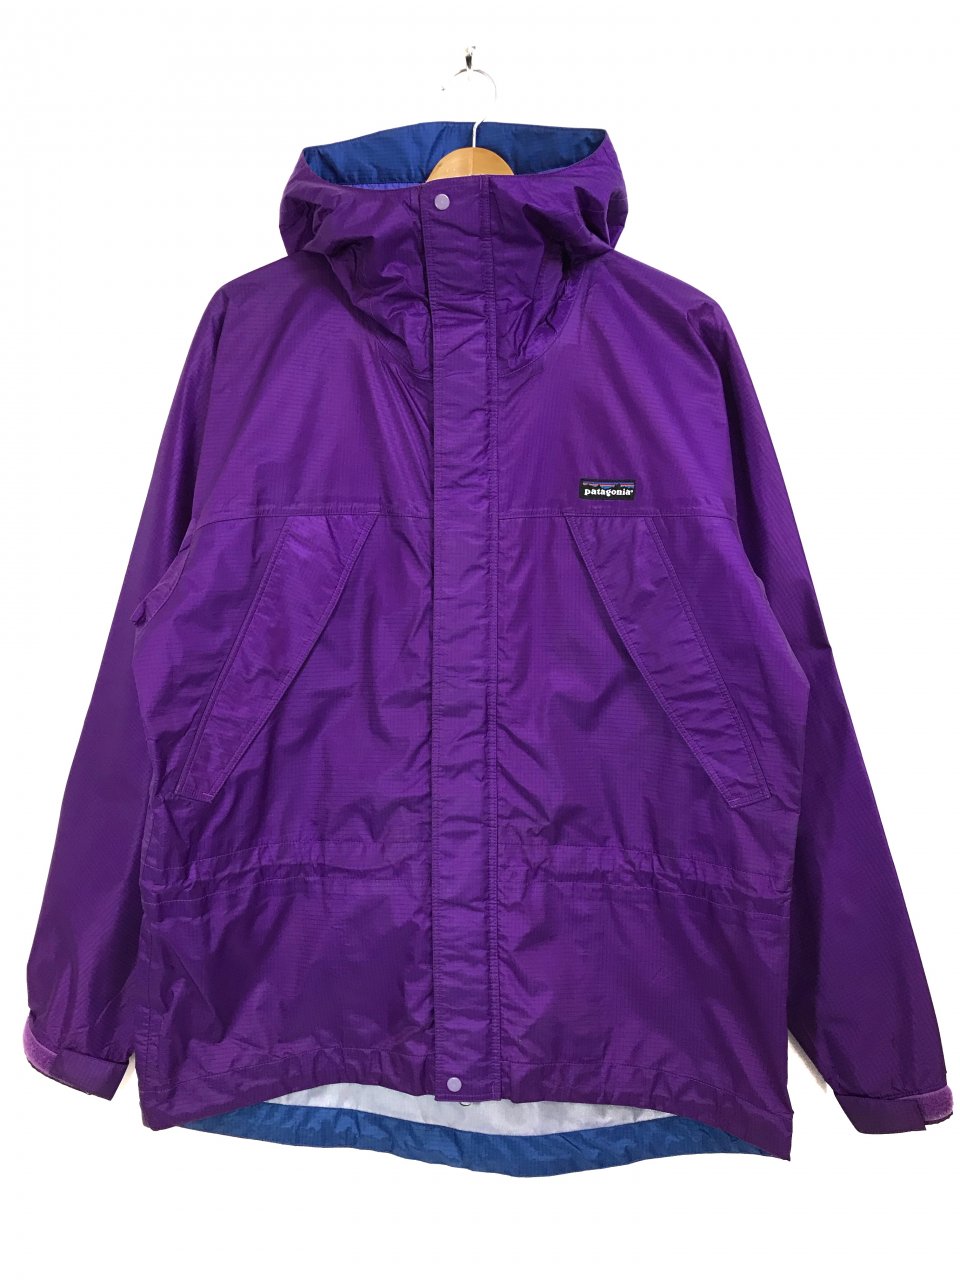 94年 patagonia Super Pluma Jacket (Bright Purple) S 90s 雪なしタグ 